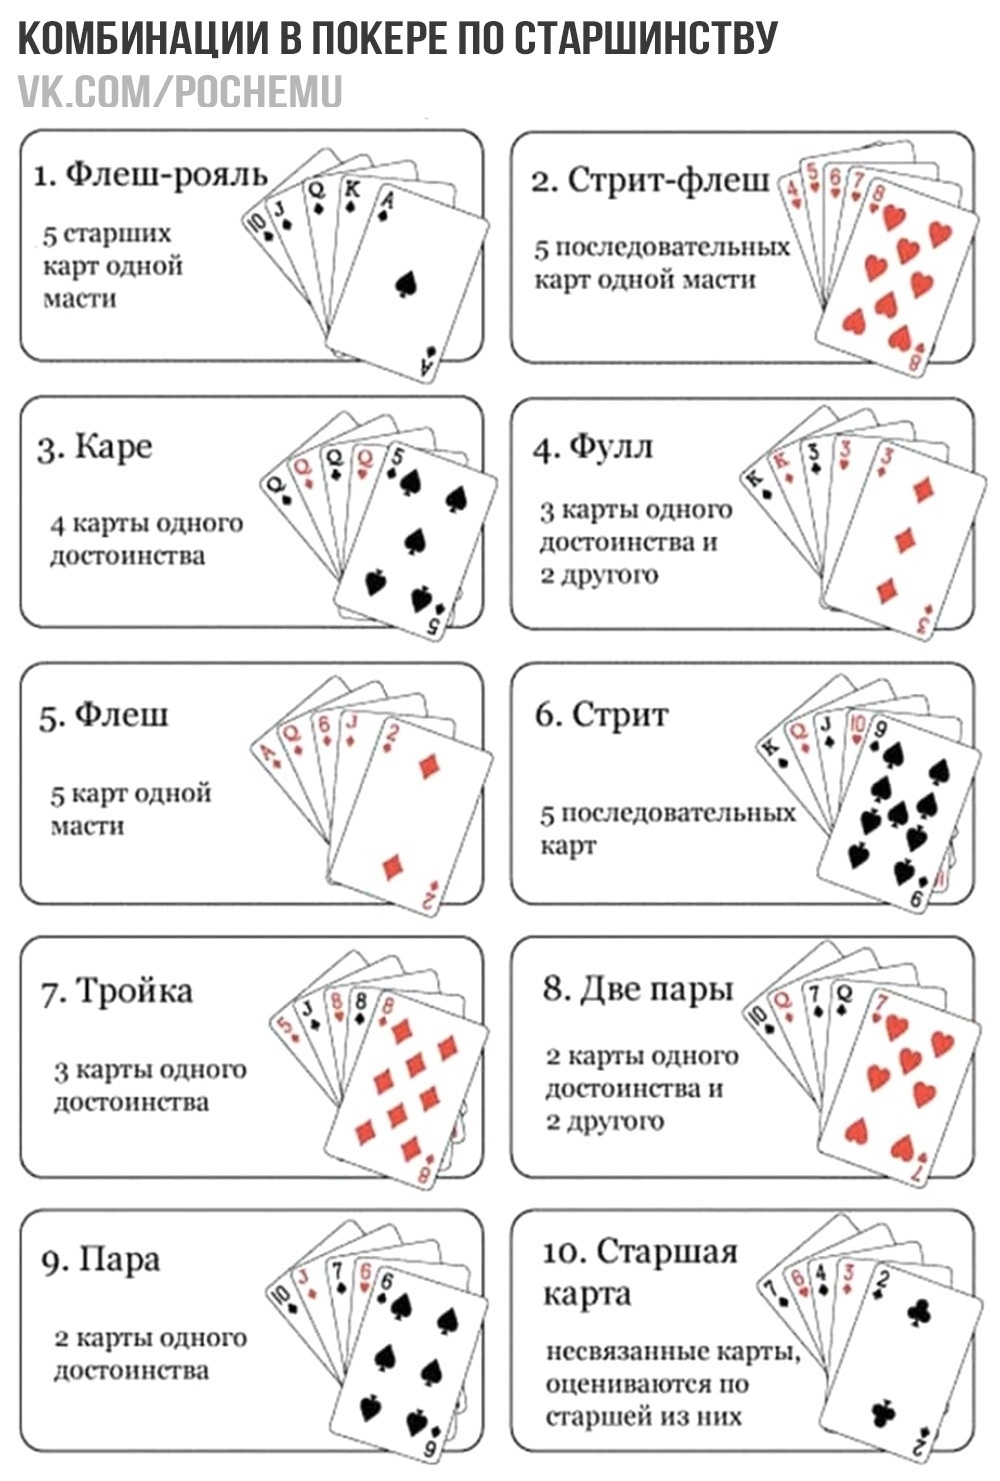 Любые игры с картами. Игра в Покер правила для начинающих комбинации. Комбинации в покере по старшинству. Комбинации в покере 36 карт. Стрит флеш в покере комбинация.